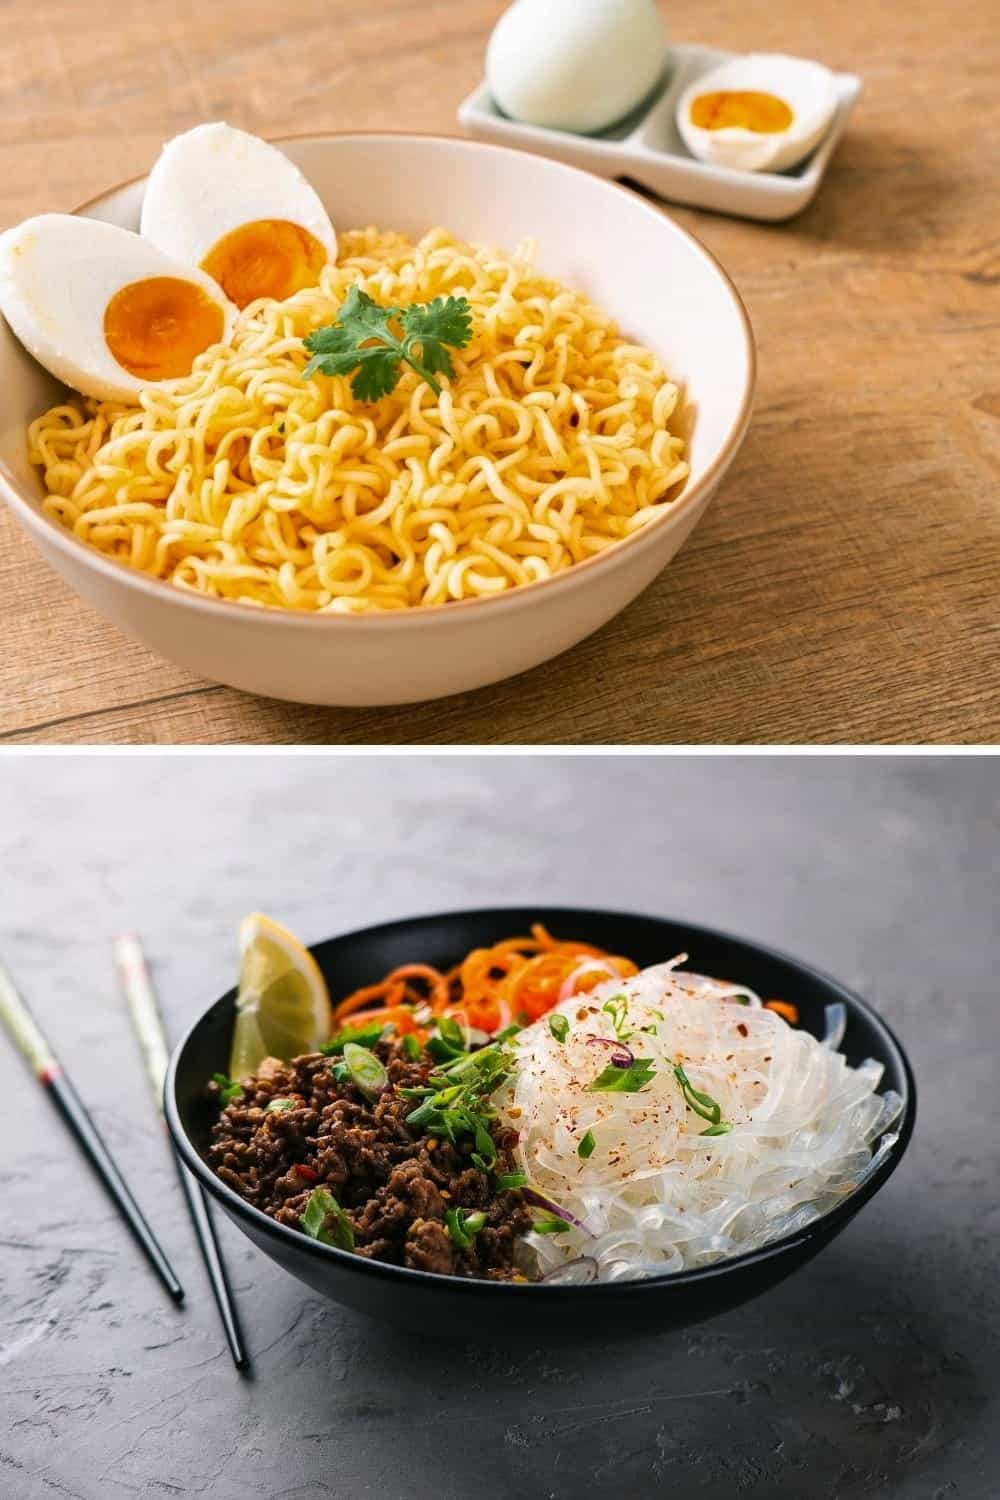 Egg Noodle Vs Rice Noodle